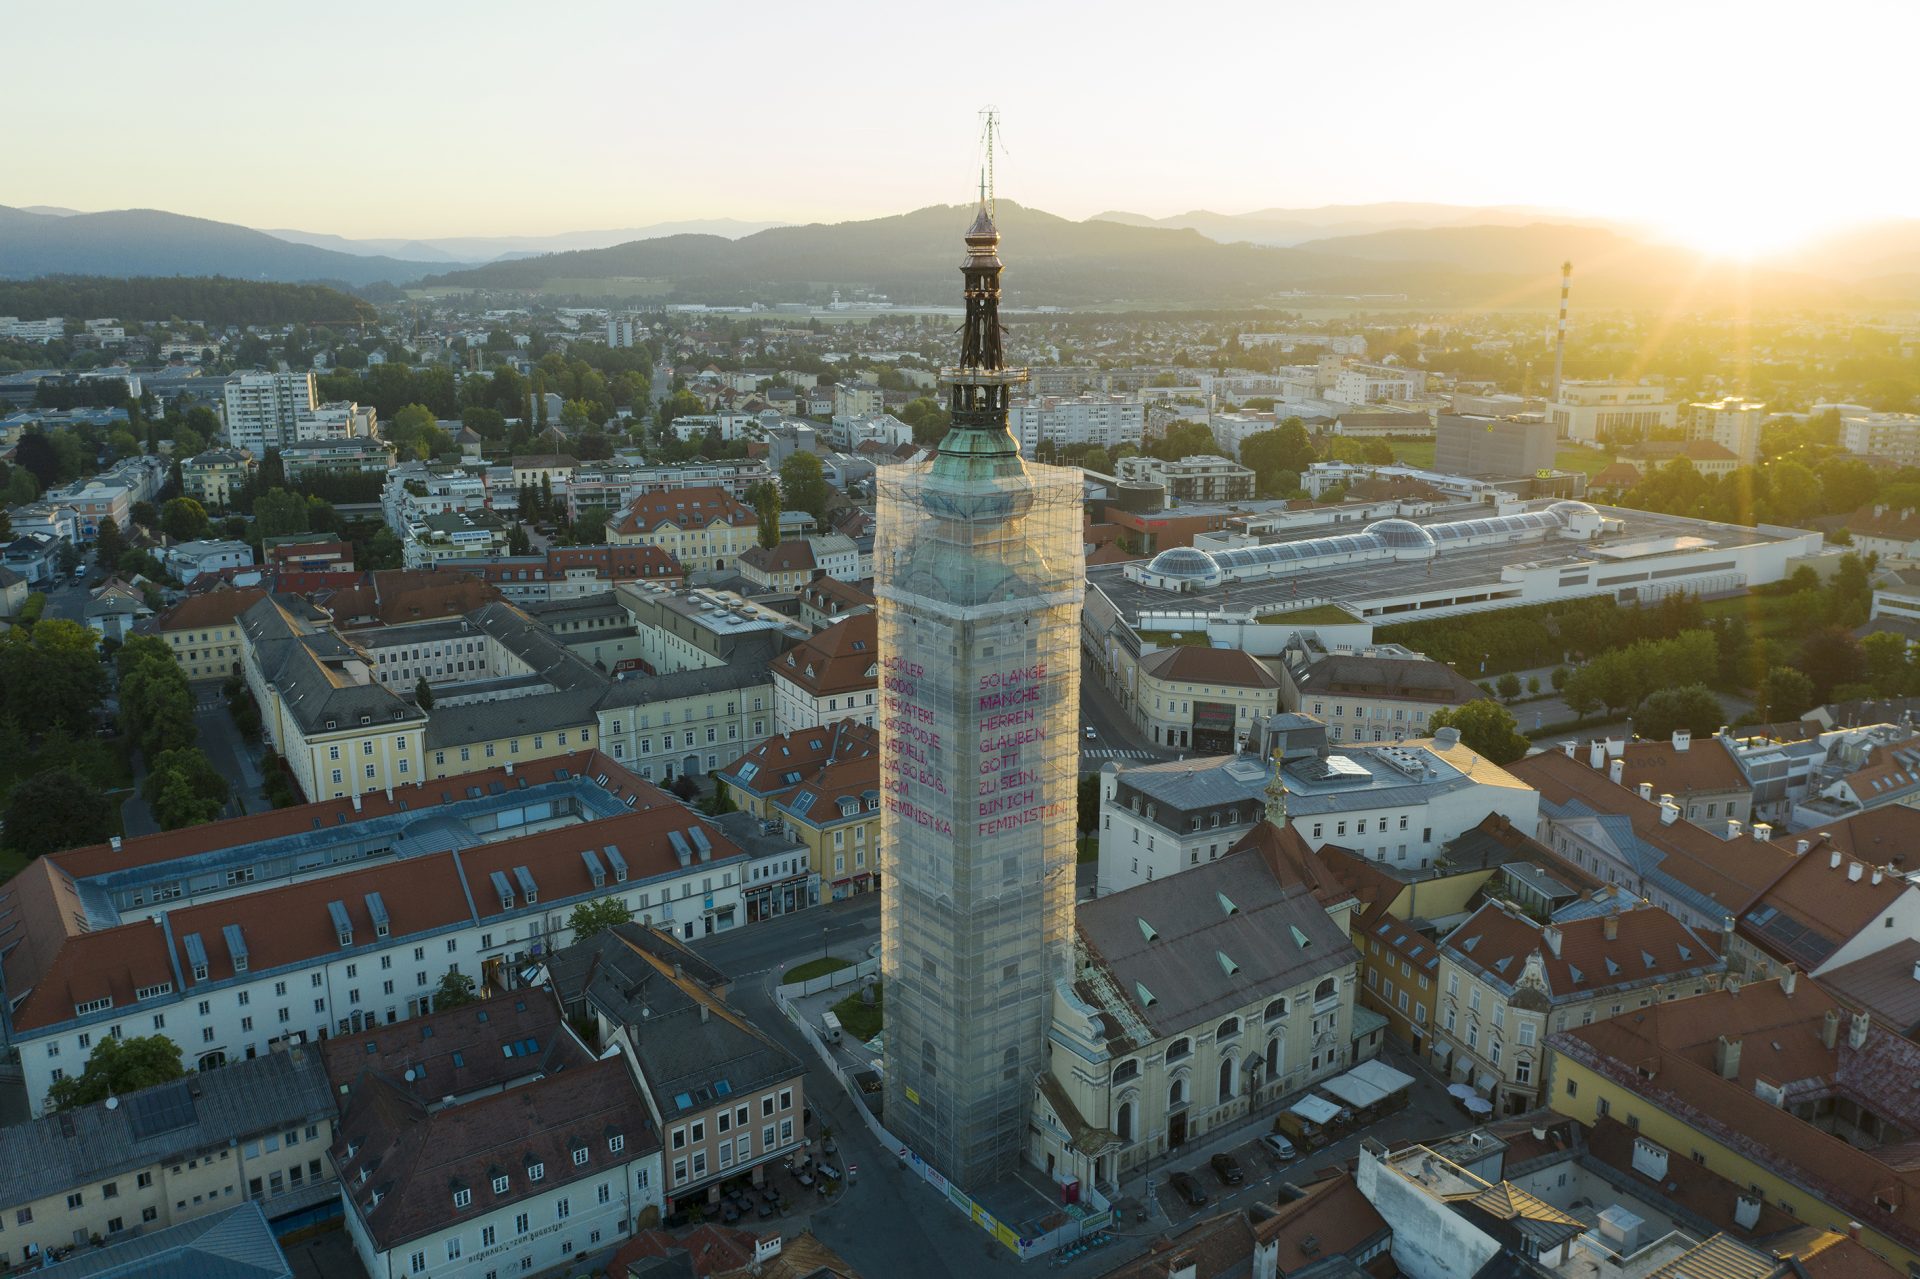 N°19 + N°20 City parish, Klagenfurt, Austria